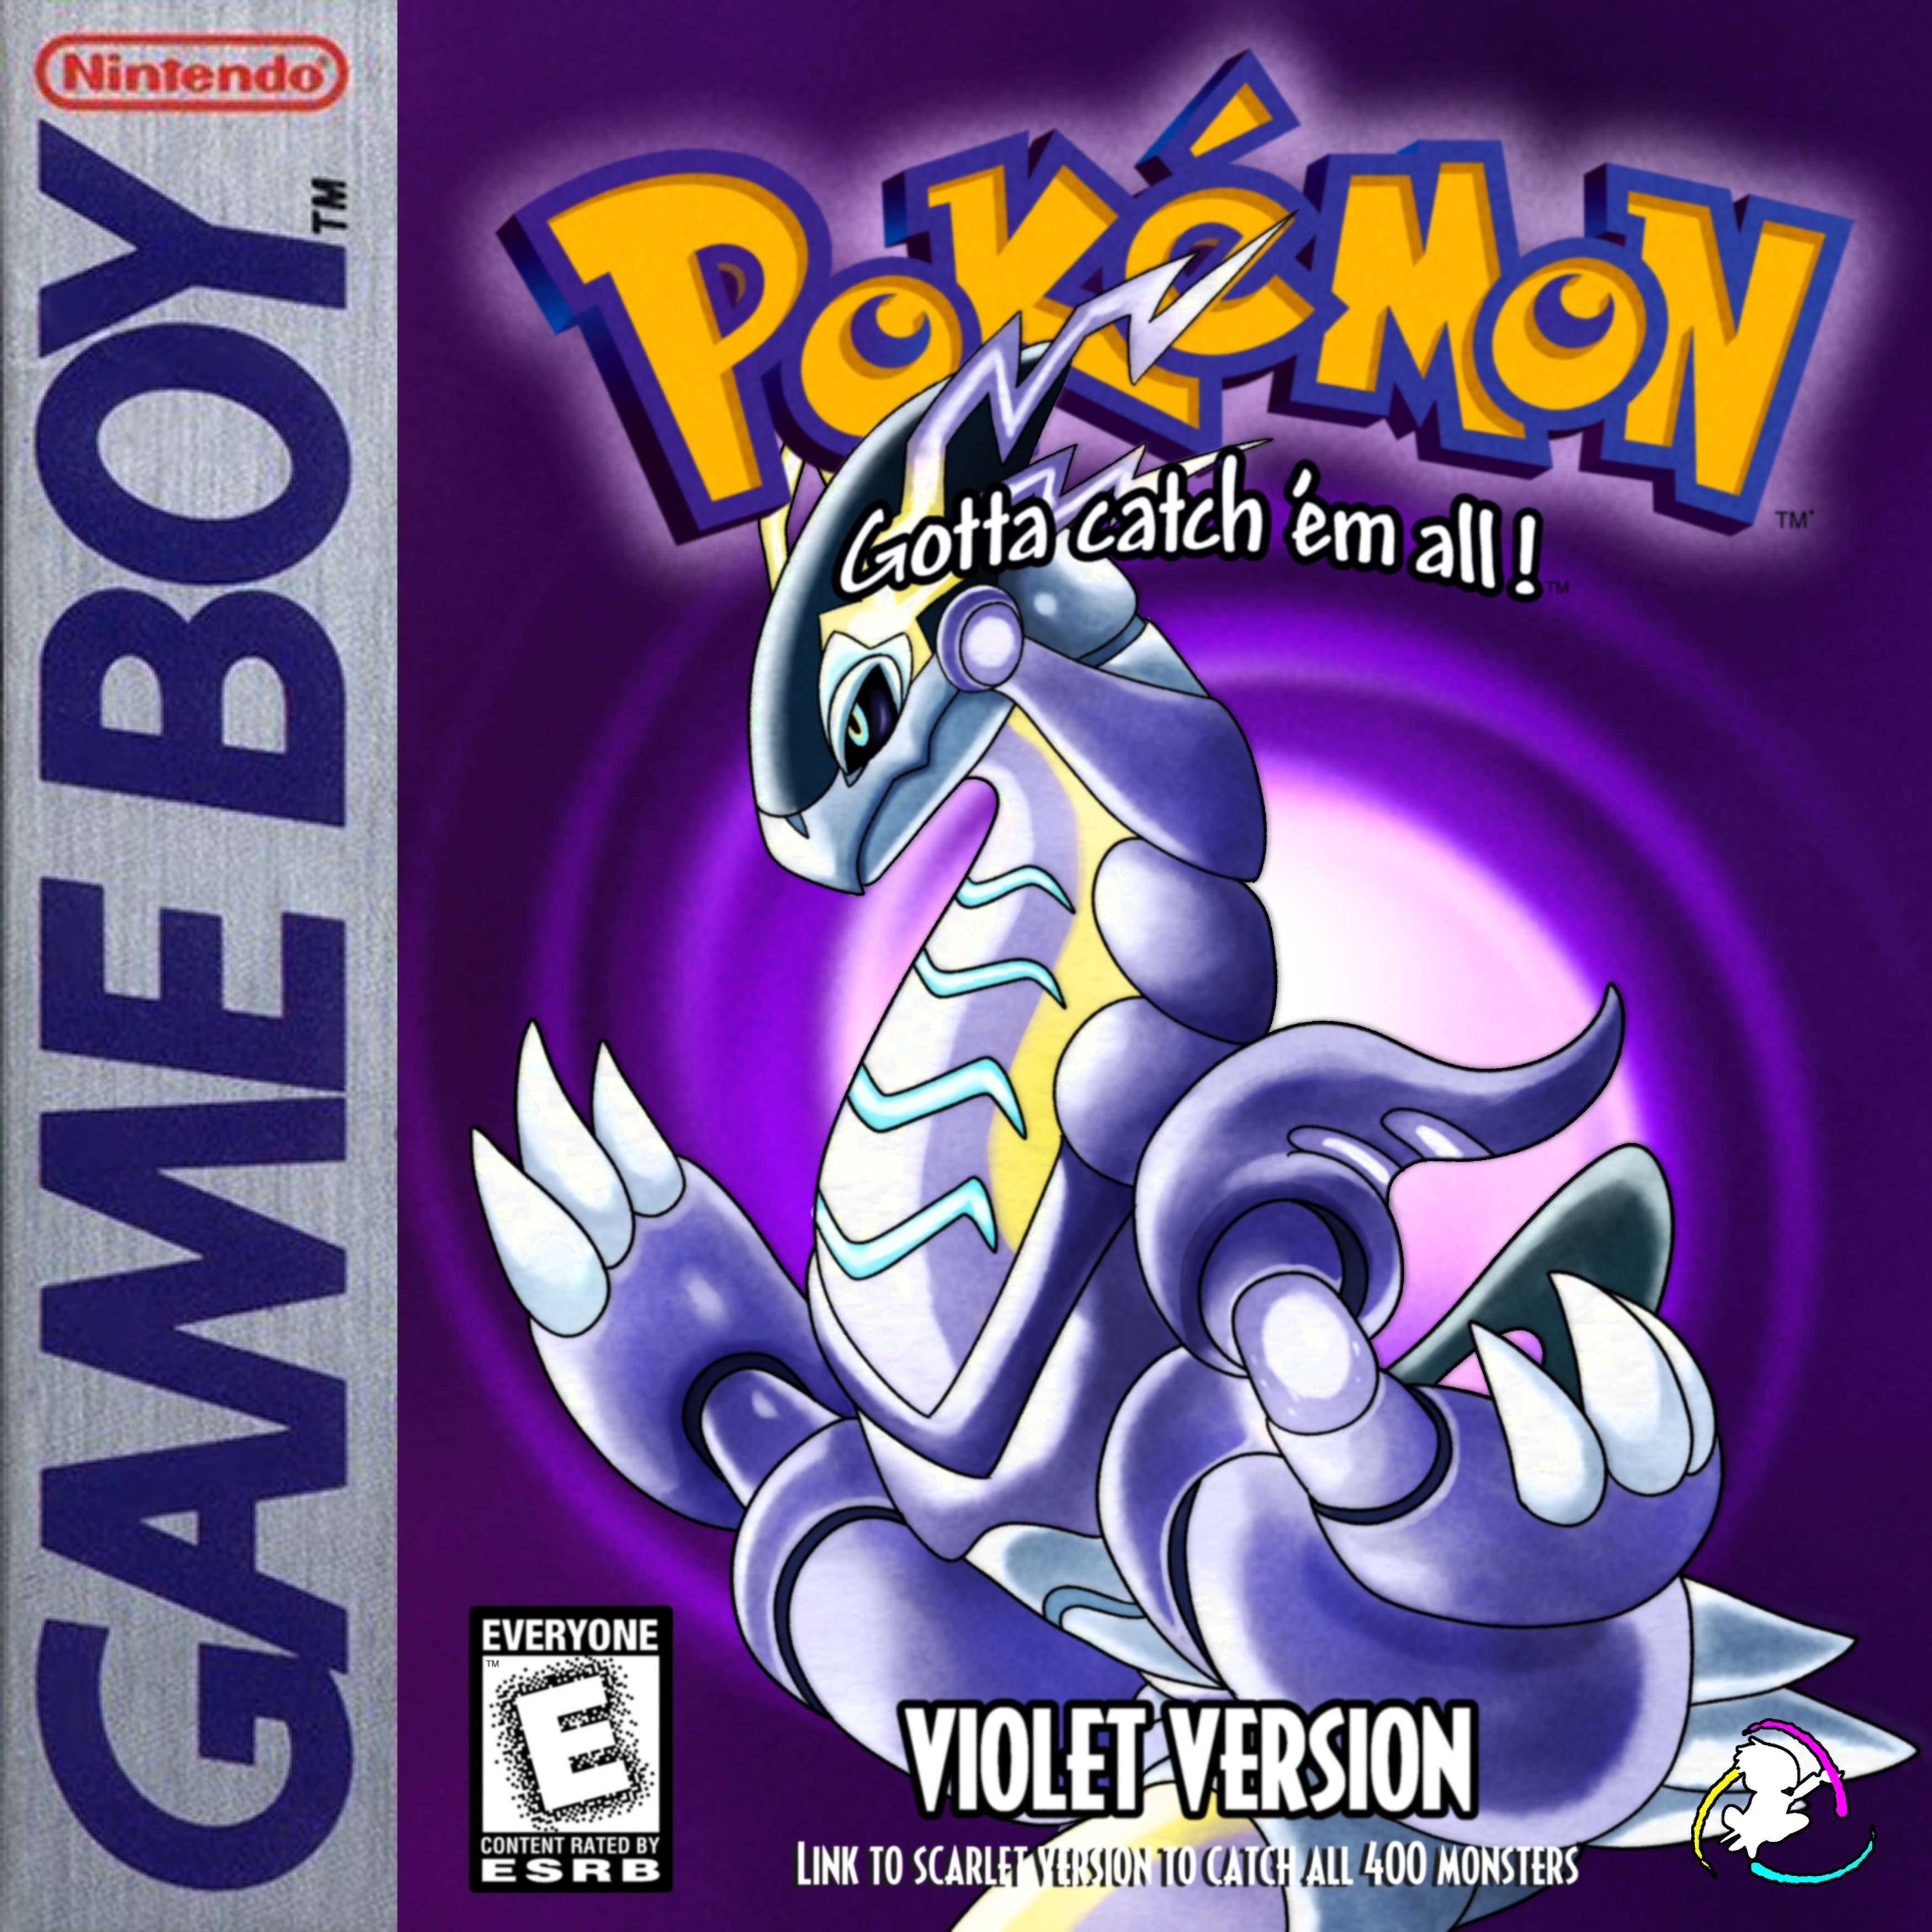 Chris the Legendary ❁ (Void Era) on X: Pokemon Scarlet and Violet  (Nintendo Gameboy 1996) #PokemonScarlet #PokemonViolet   / X